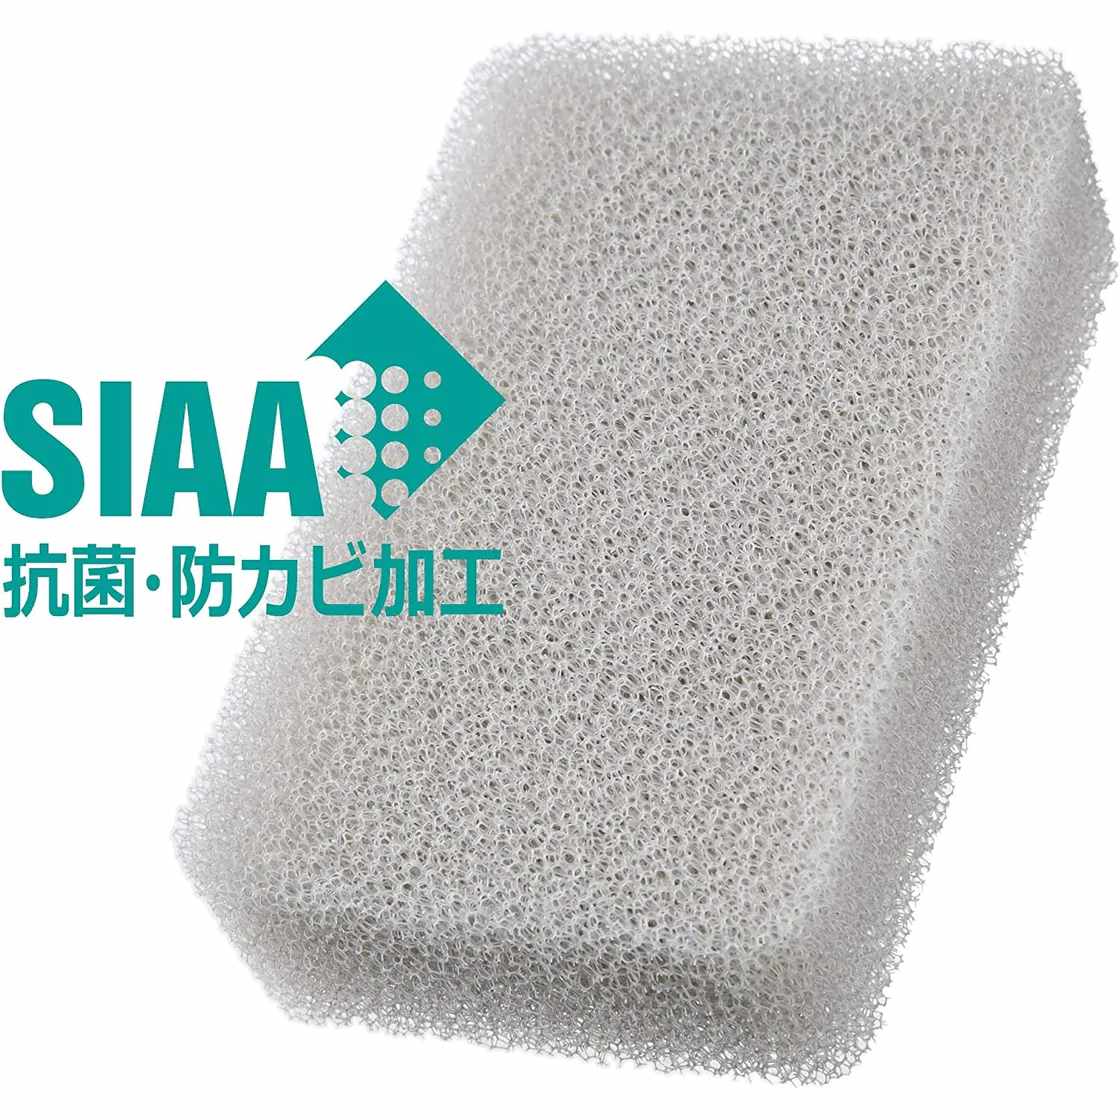 High-Tech Designer Sponge-Japan-Best.net-White-Japan-Best.net